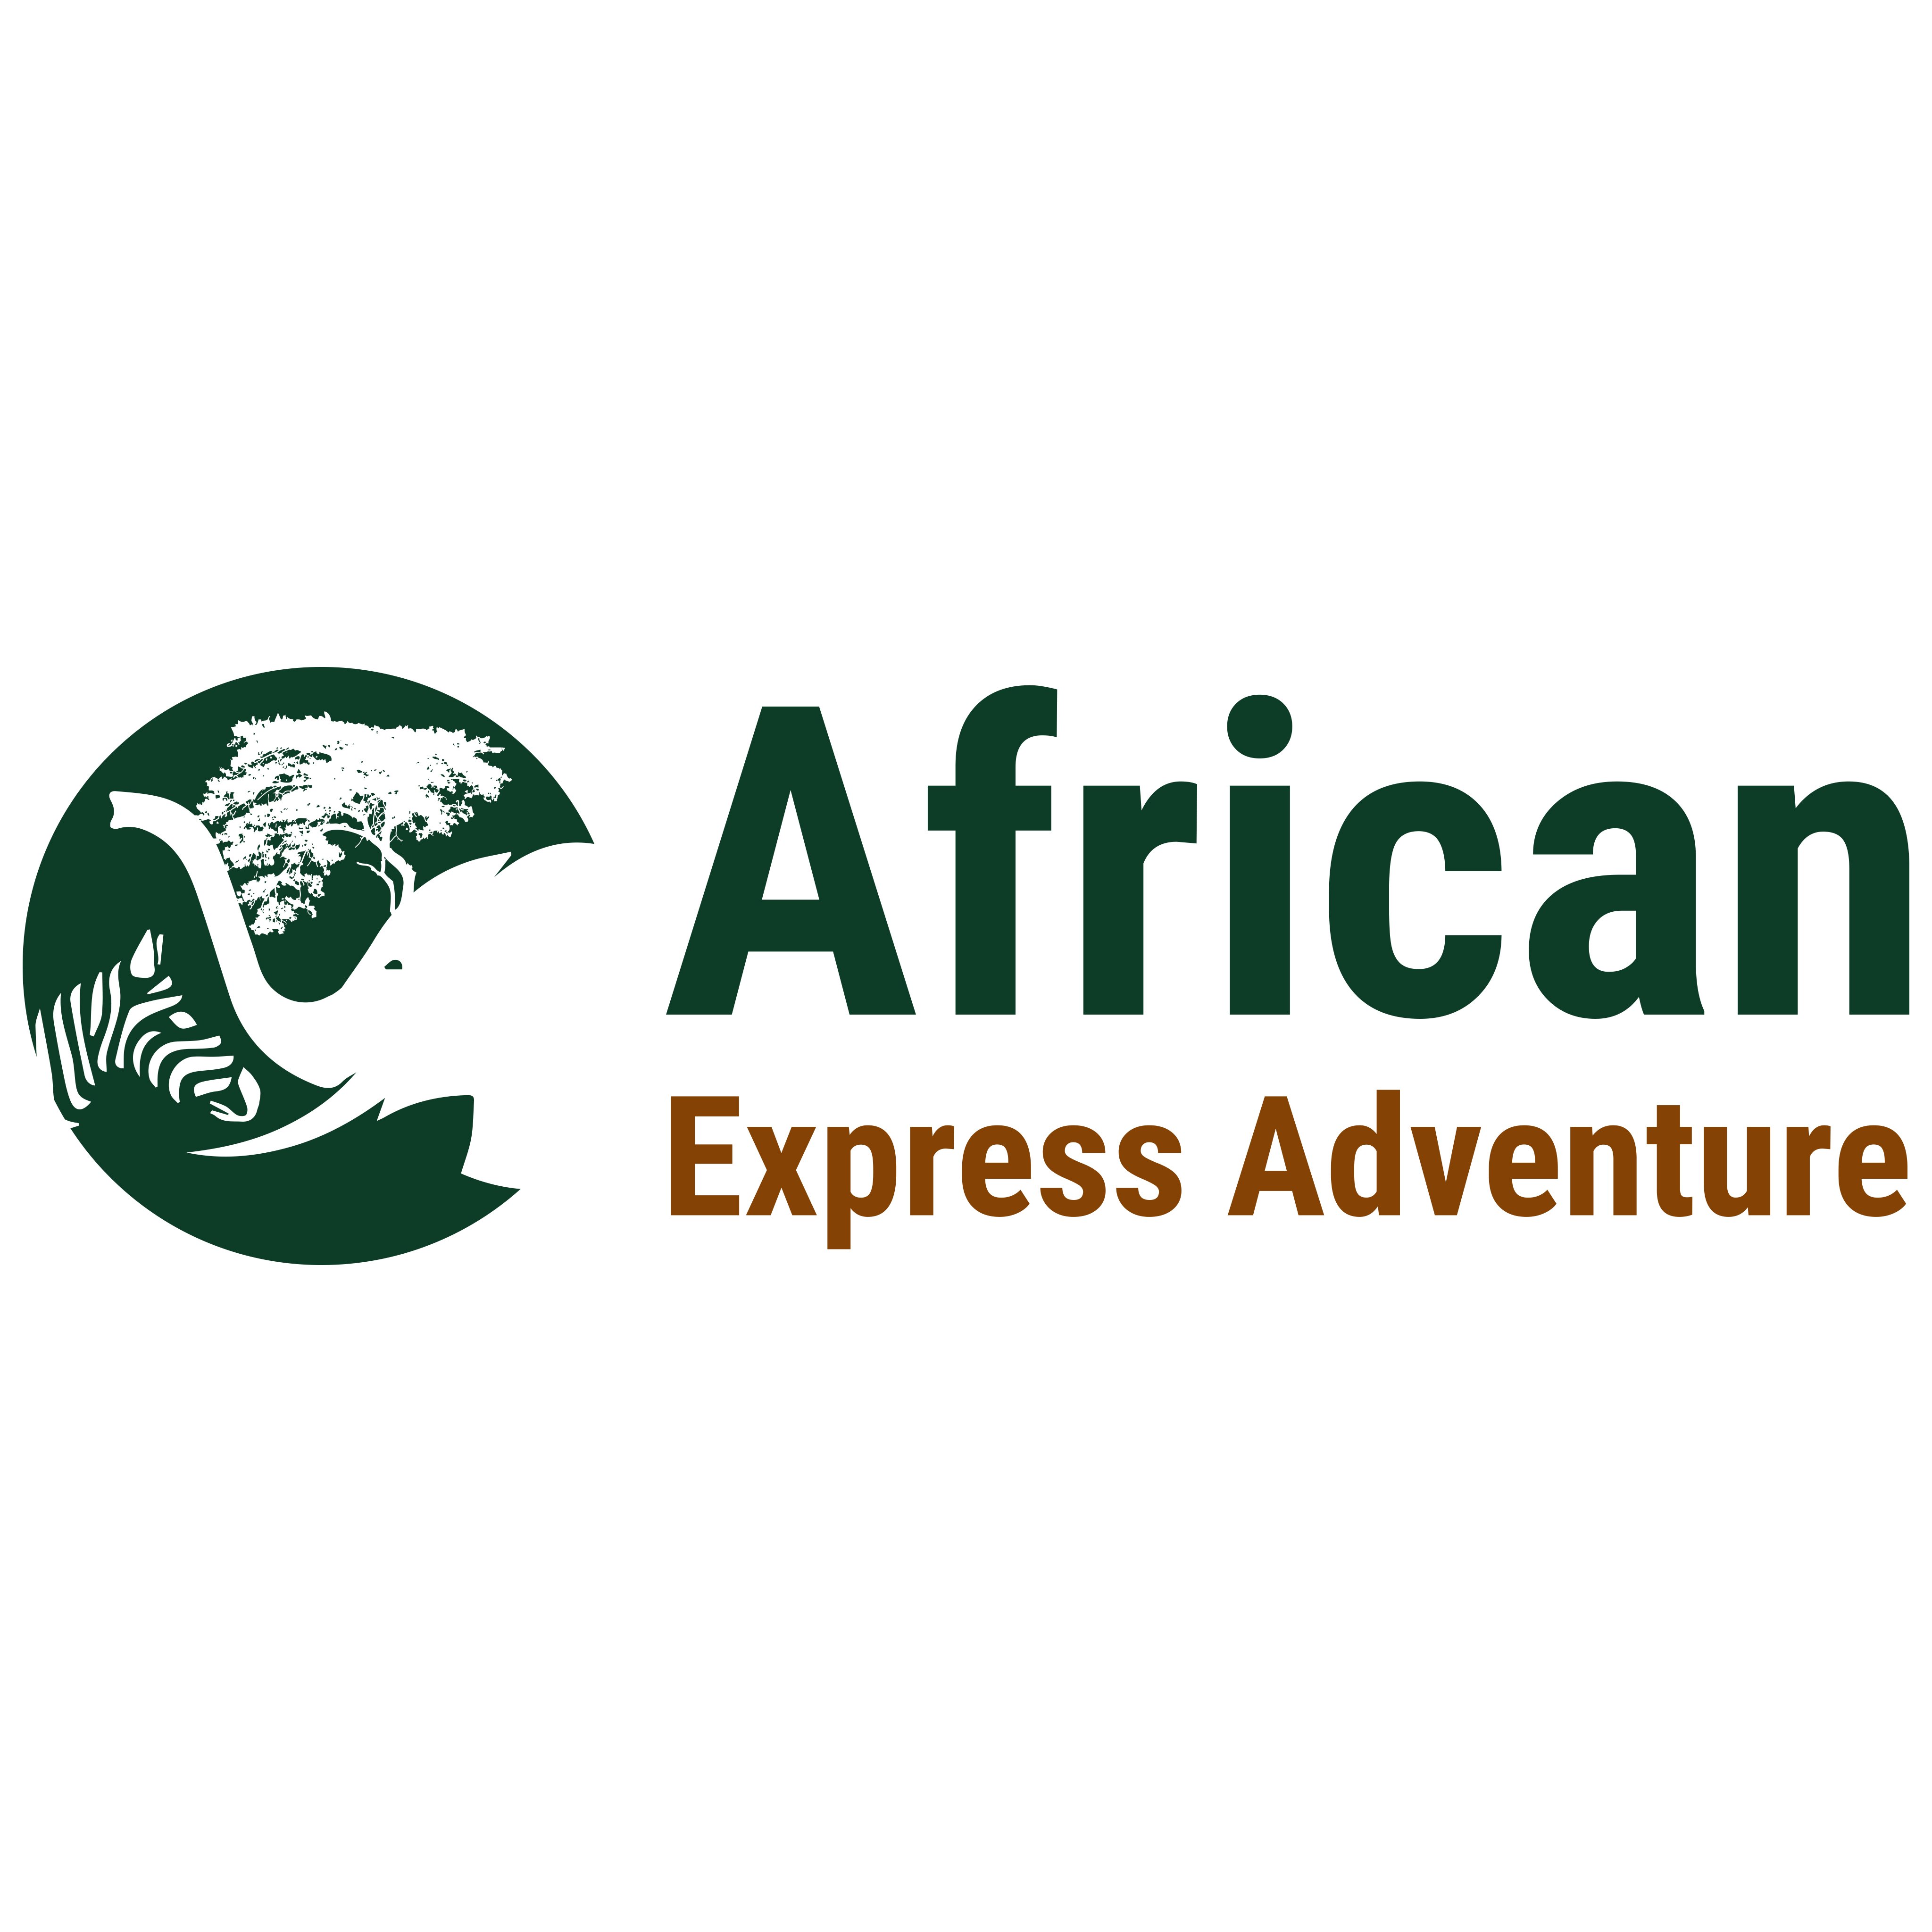 African Express Adventure